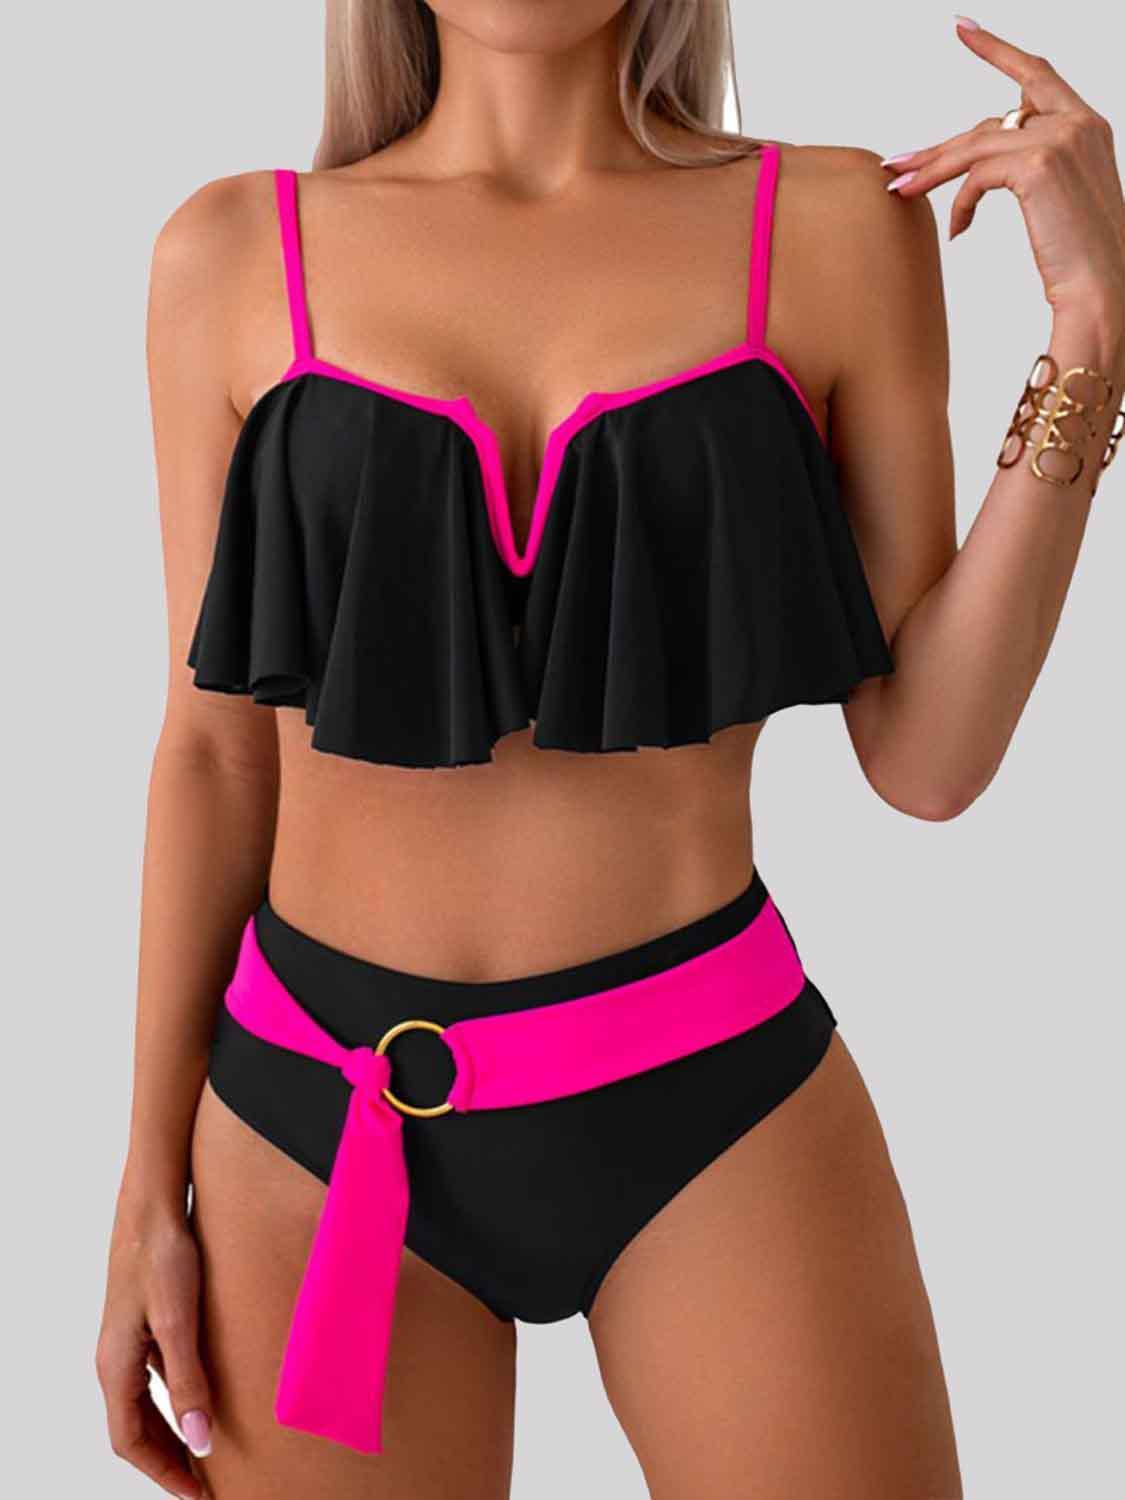 a woman in a black and pink bikini top